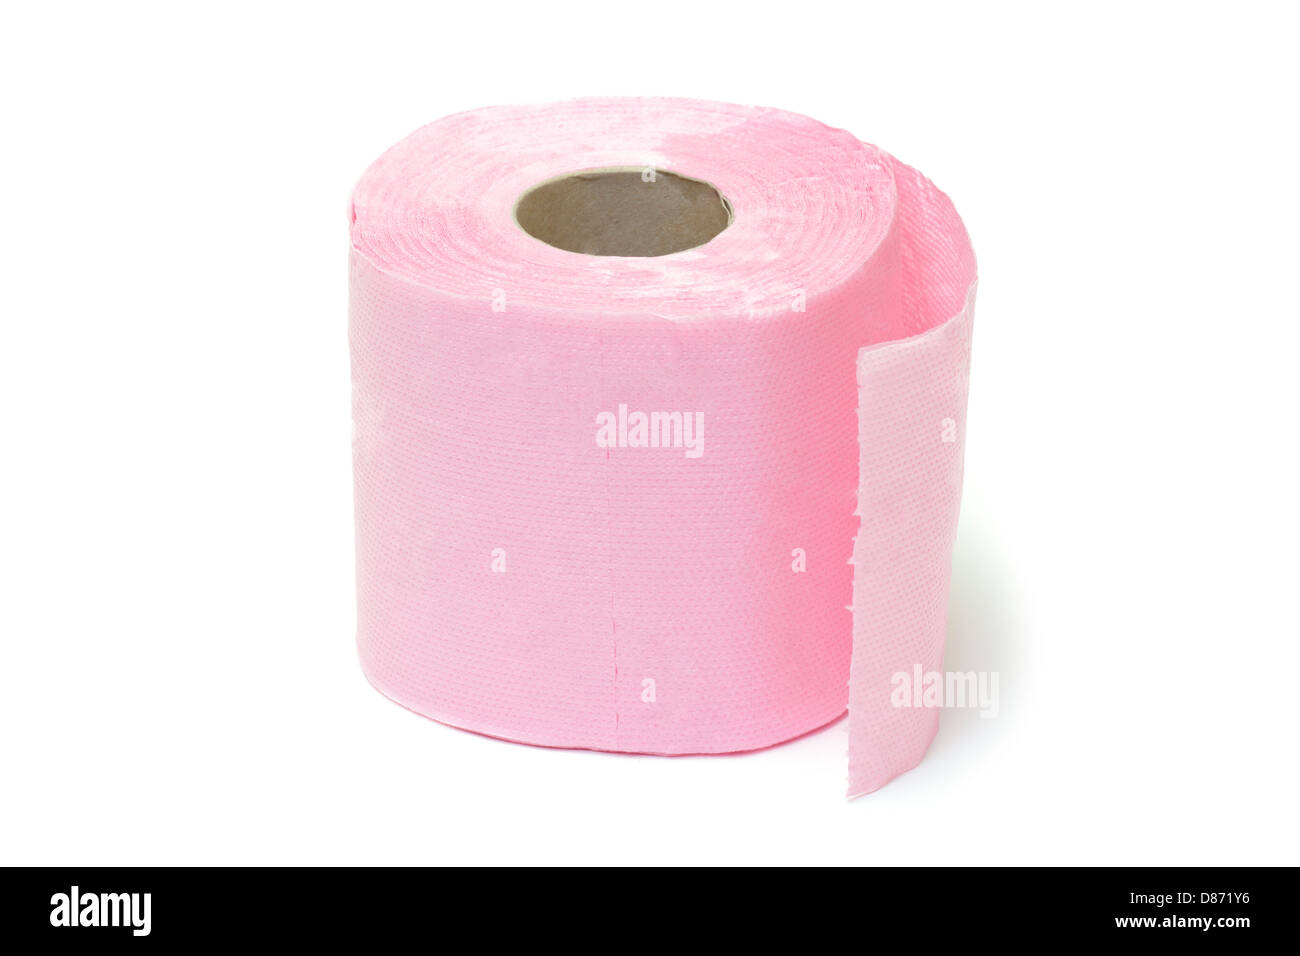 Пушок бумага туалетная розовая упаковка. Туалетная бумага после мочеиспускания с розовым оттенком. Розовая туалетная бумага купить.